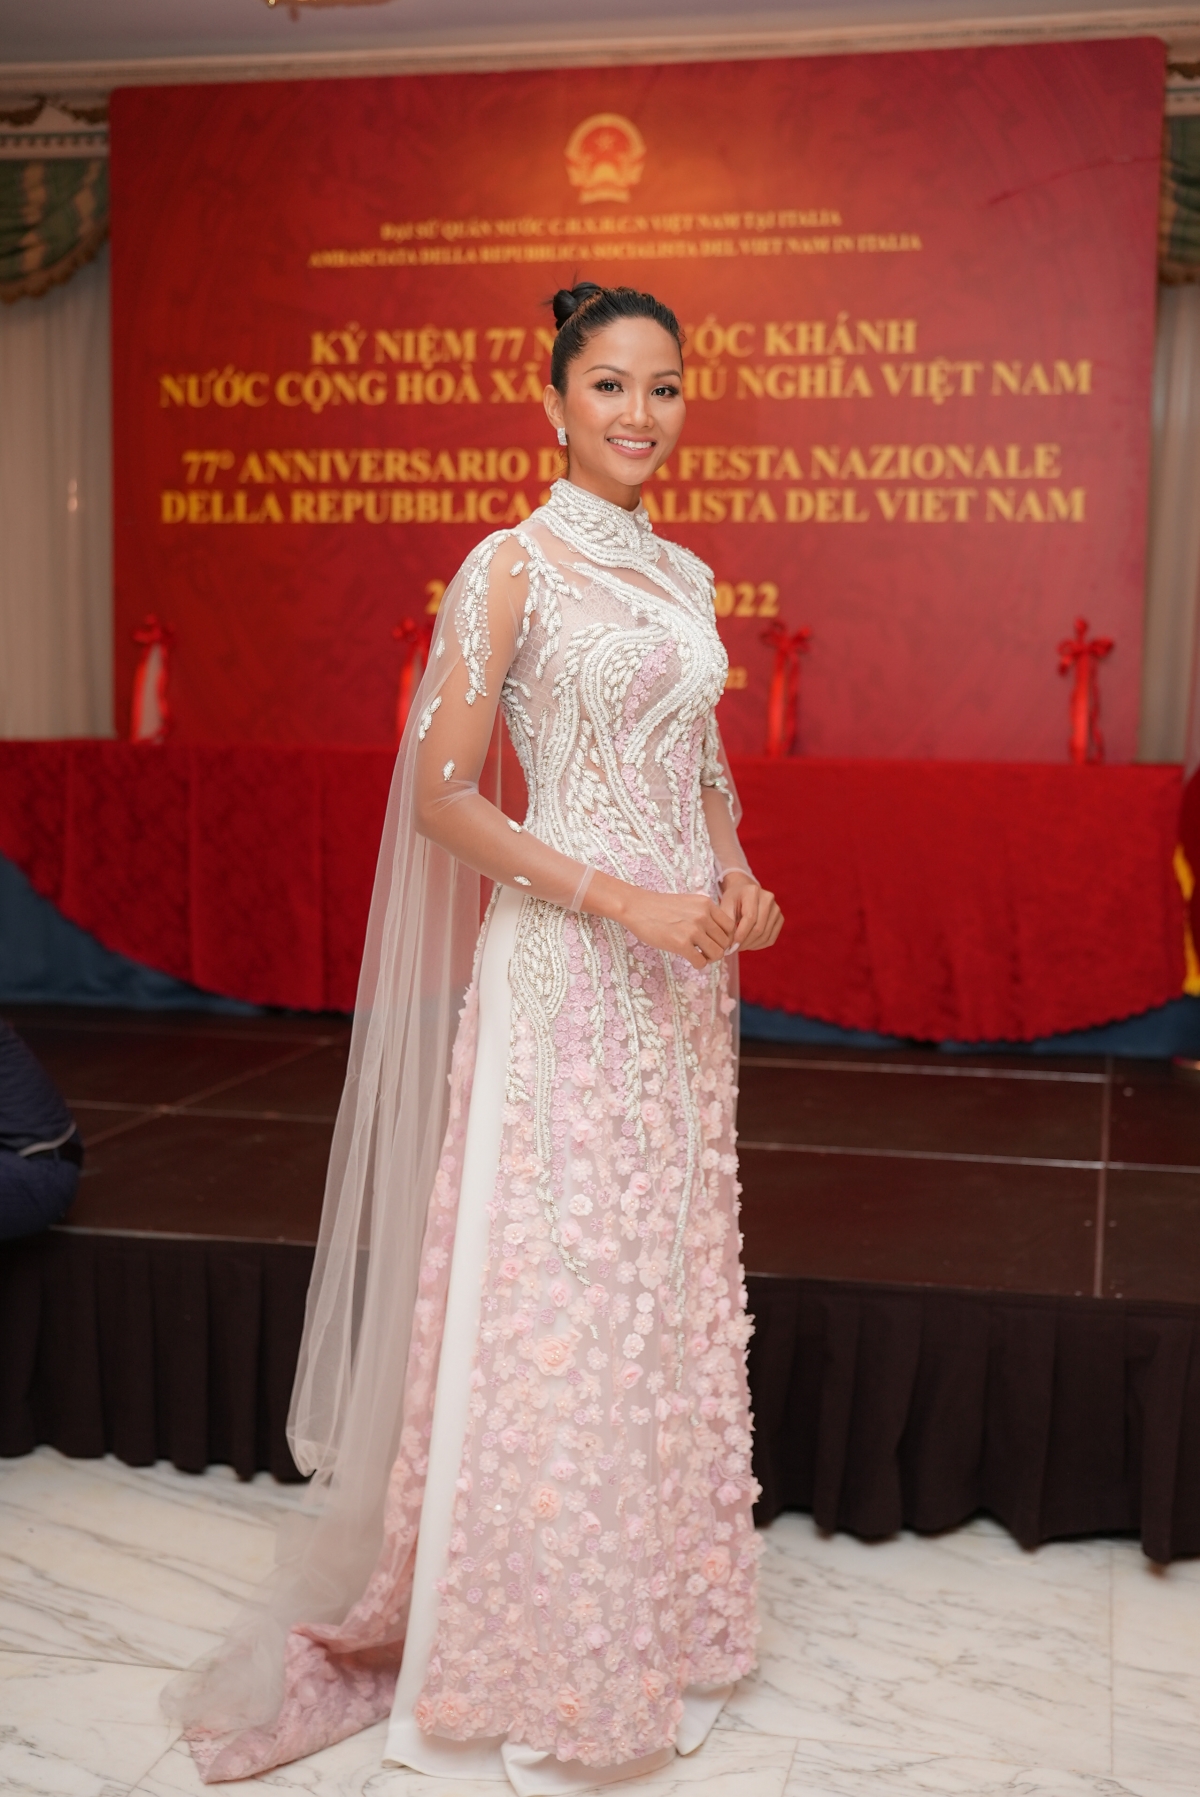 Hoa hậu H’Hen Niê diện áo dài đính hoa dự lễ tại Đại sứ quán Việt Nam tại Italy - ảnh 2